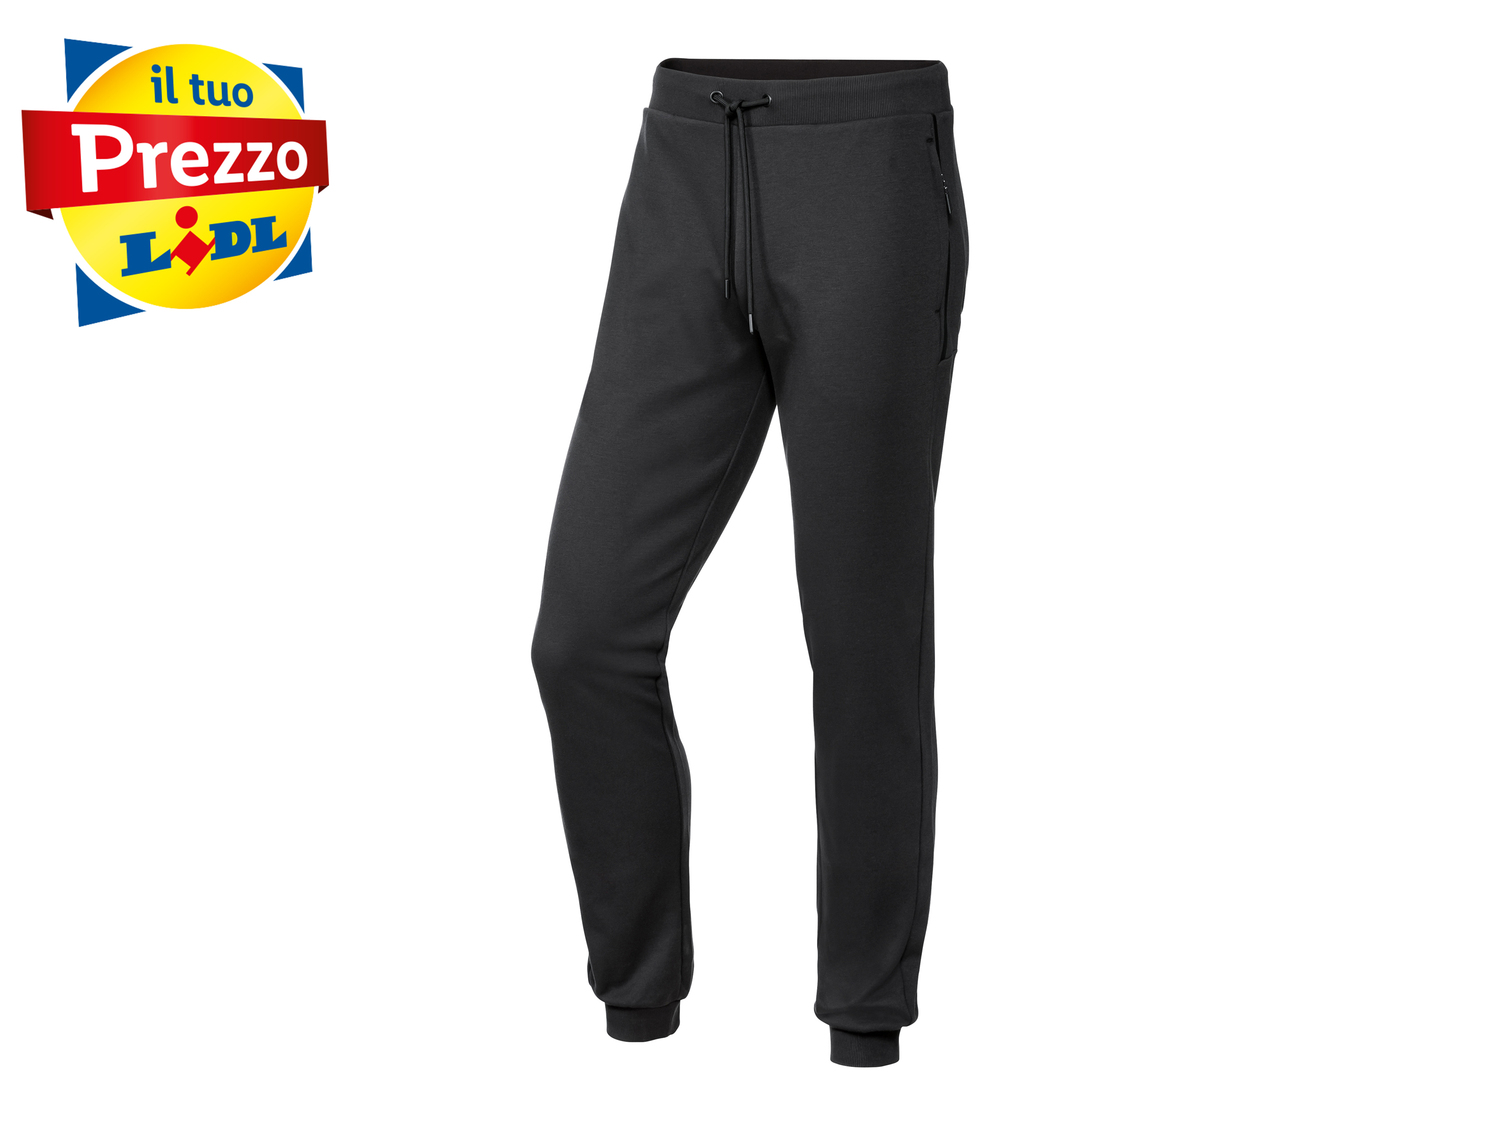 Pantaloni sportivi da uomo Crivit, prezzo 8.99 € 
Misure: S-XL
Taglie disponibili

Caratteristiche

- ...